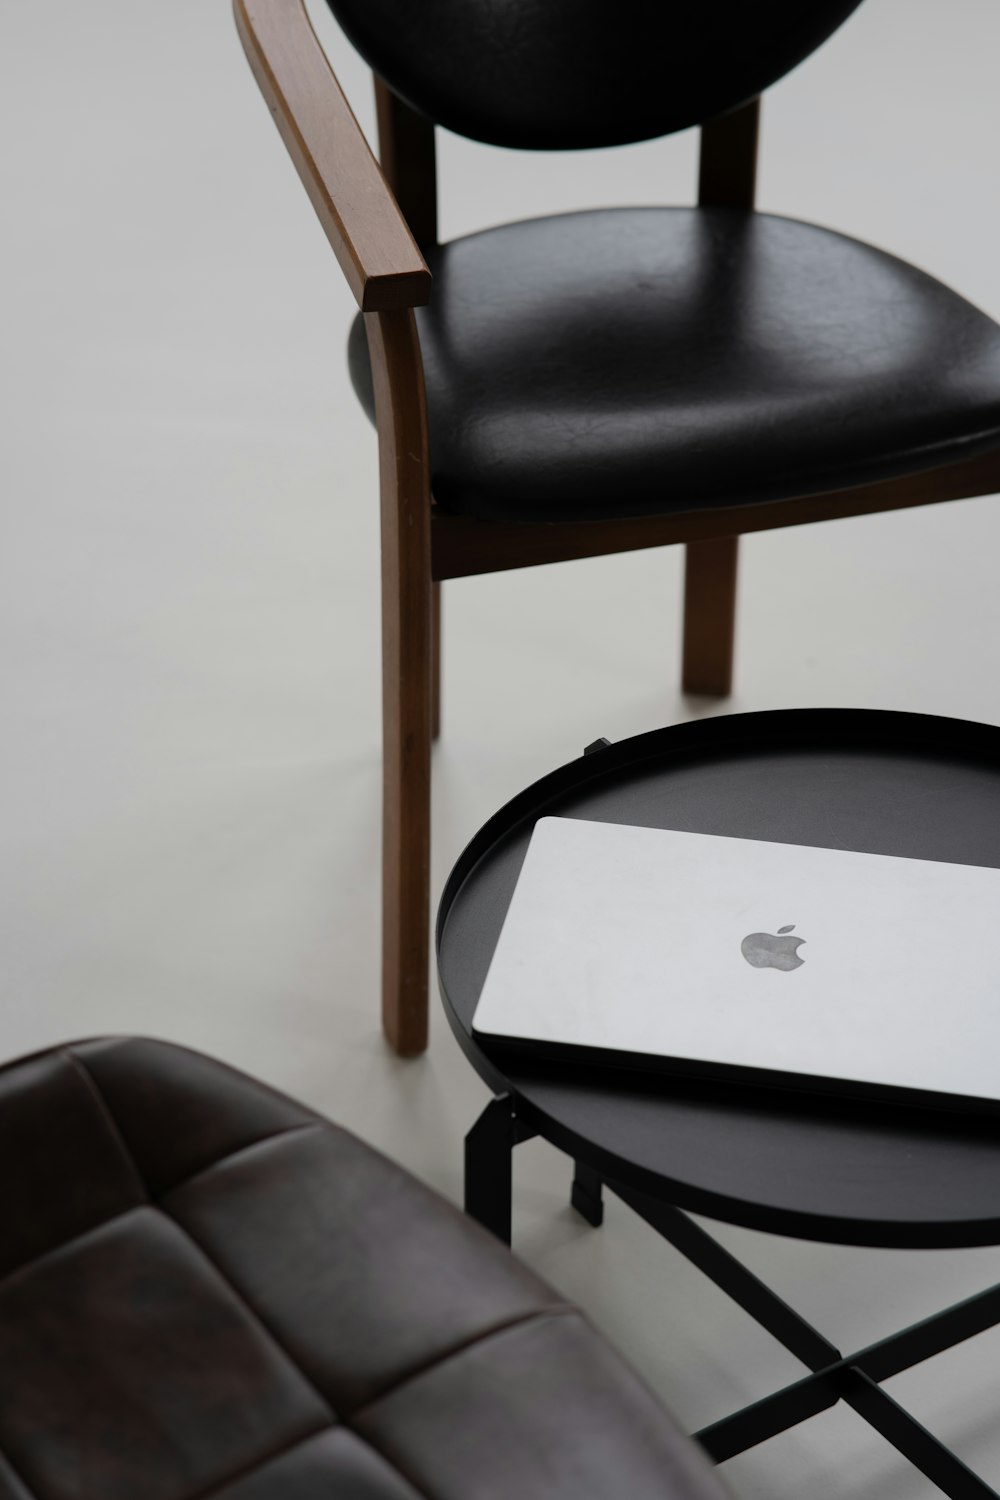 의자 옆 테이블에 놓인 애플 노트북